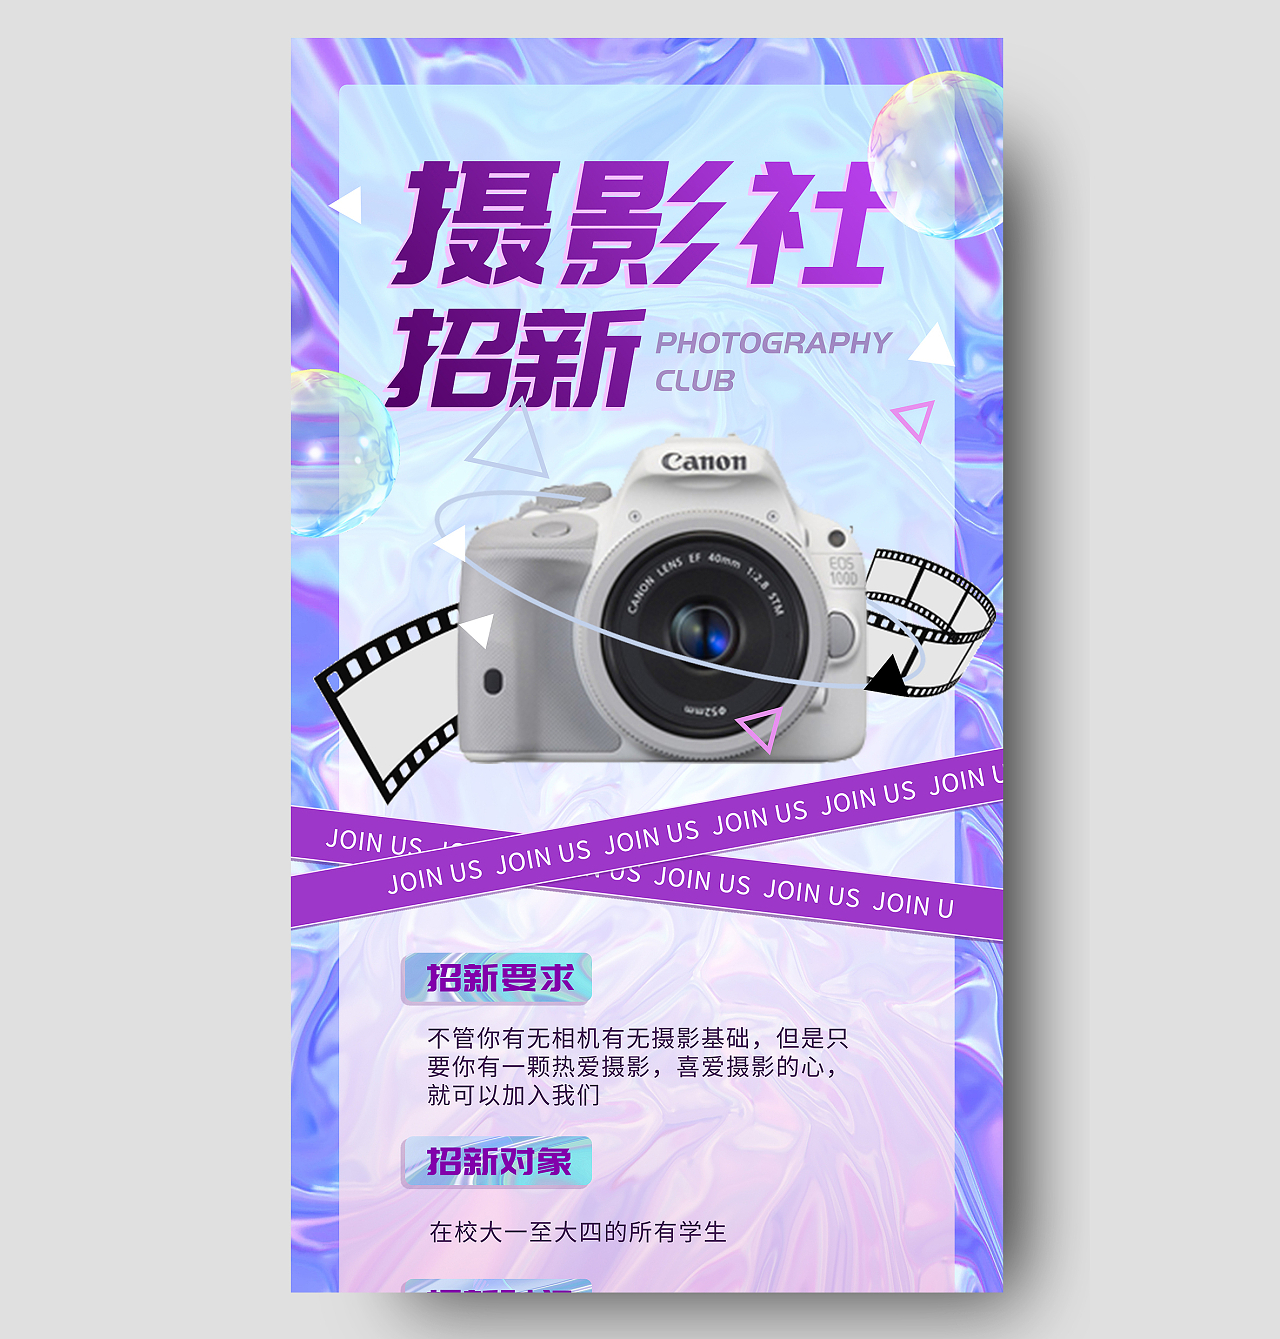 蓝色炫酷摄影社招新这团宣传活动酸性UI手机海报社团招新酸性摄影手机长图海报